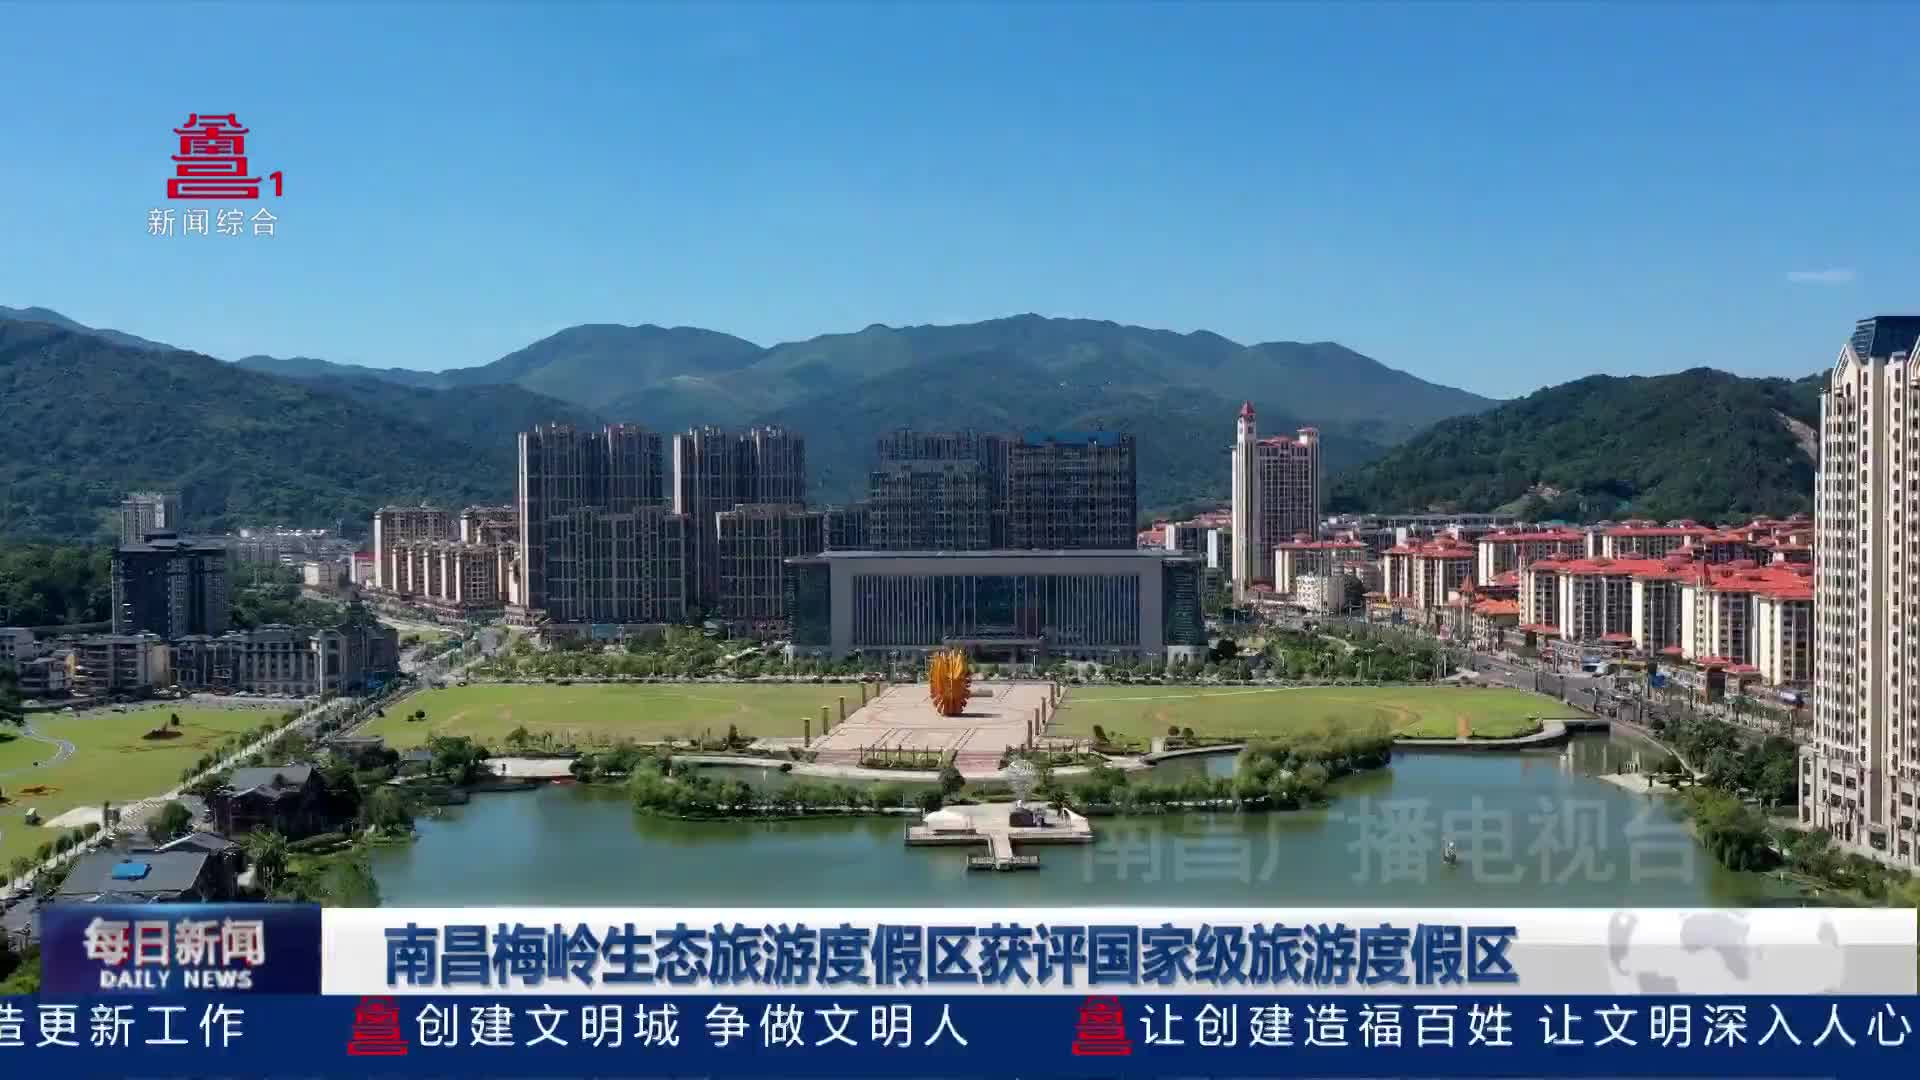 南昌梅岭生态旅游度假区获评国家级旅游度假区